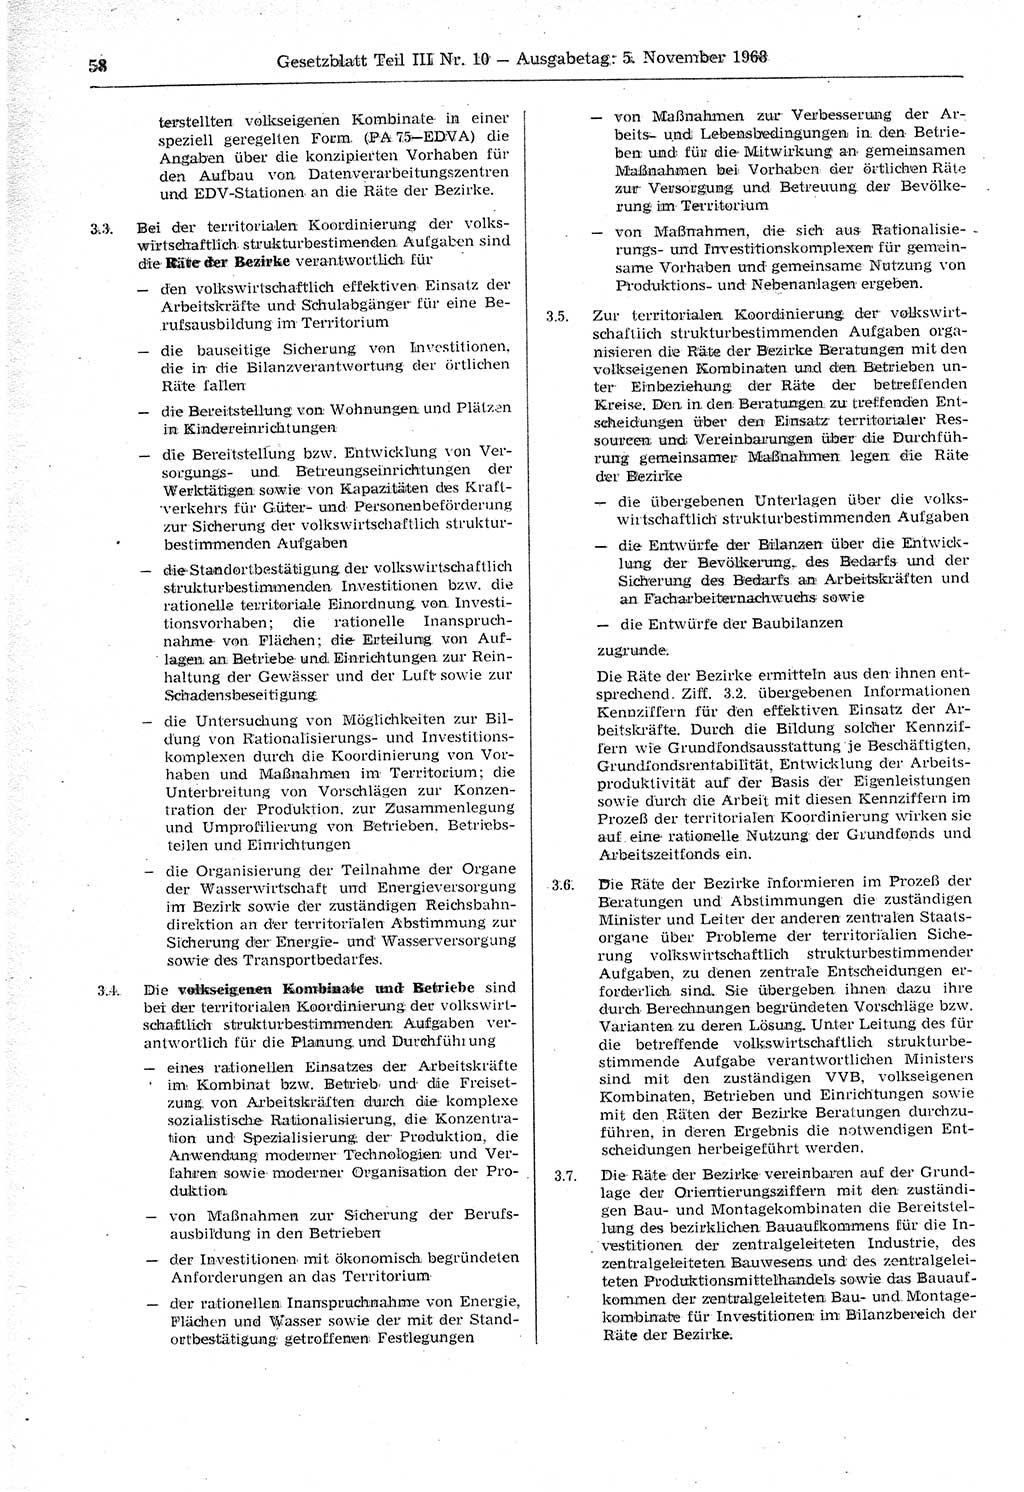 Gesetzblatt (GBl.) der Deutschen Demokratischen Republik (DDR) Teil ⅠⅠⅠ 1968, Seite 58 (GBl. DDR ⅠⅠⅠ 1968, S. 58)